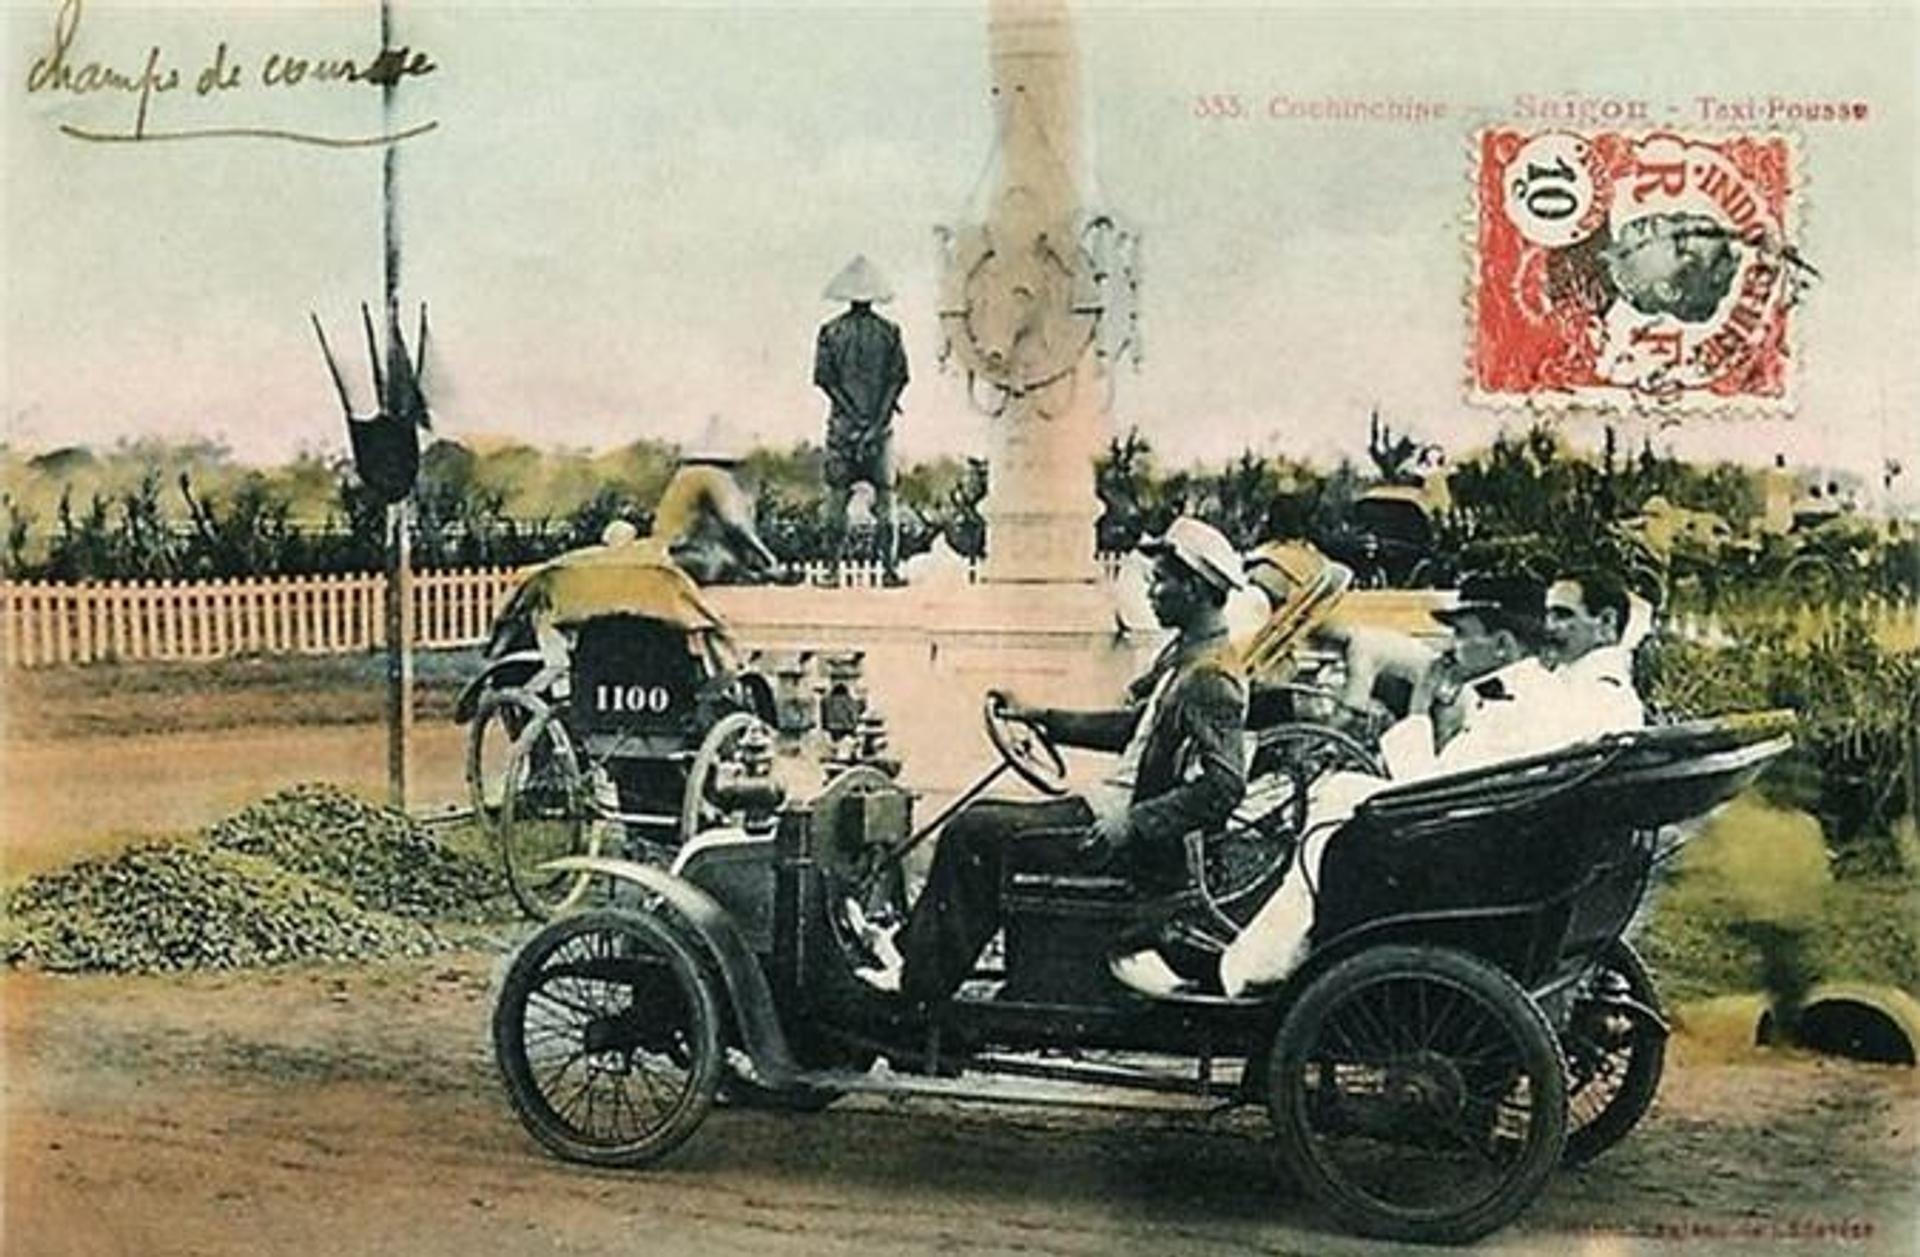  Xe chở khách năm 1912 chạy ngang tháp đồng hồ.jpeg